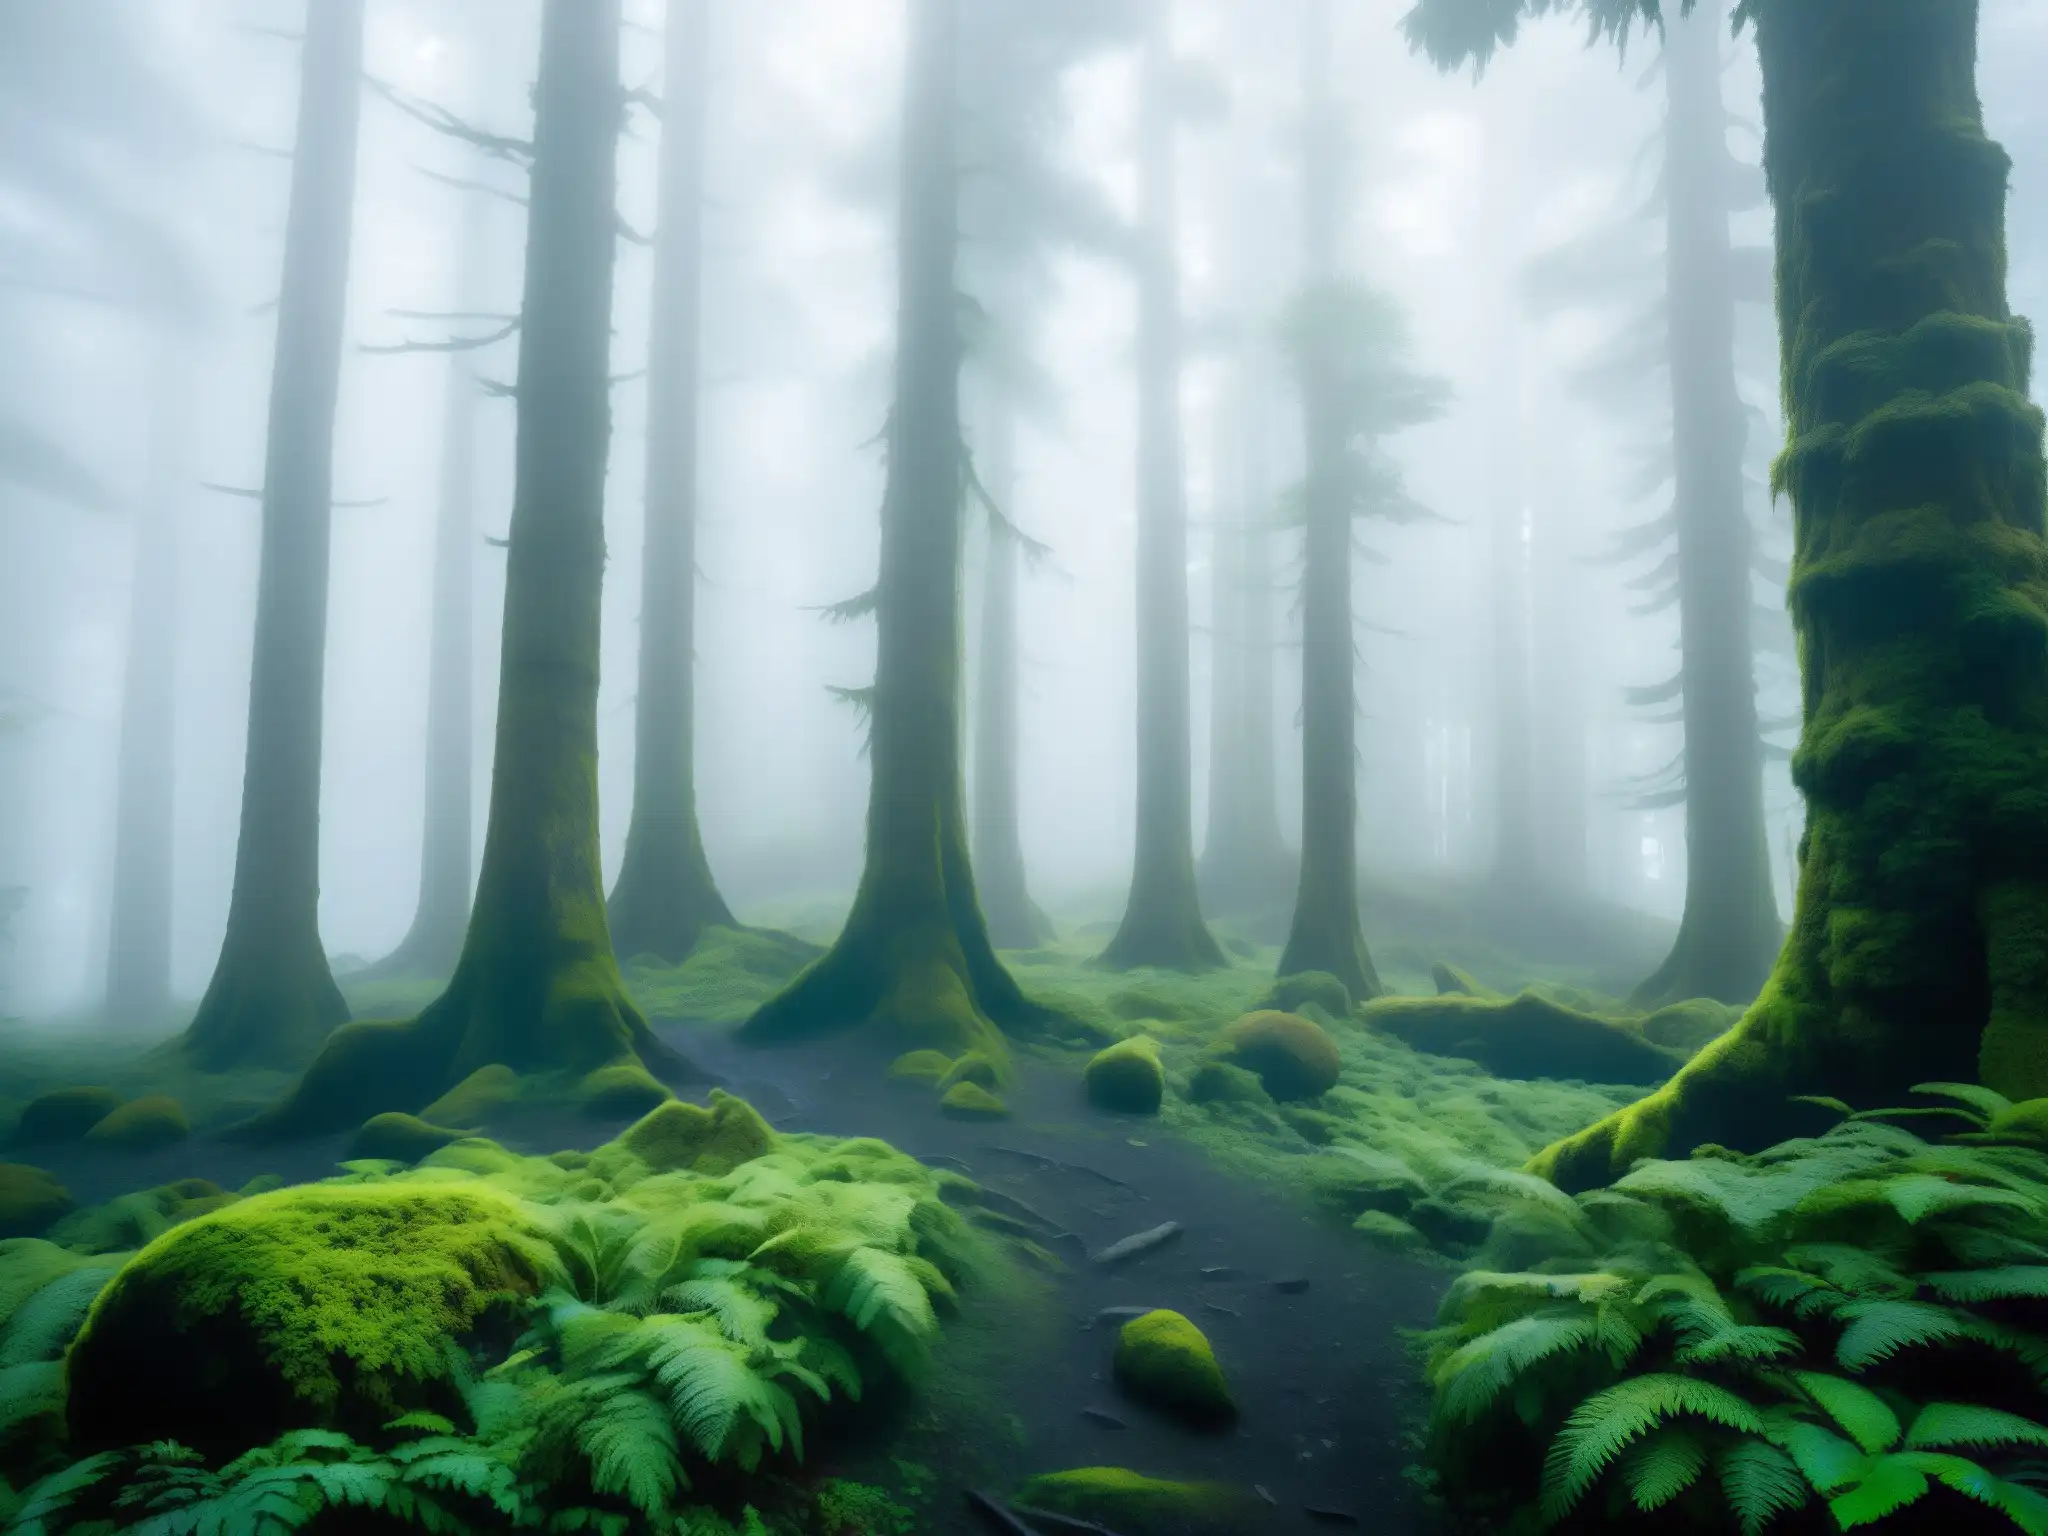 Misterioso bosque chilote con el legendario Trauco, seducción y misterio entre árboles cubiertos de musgo